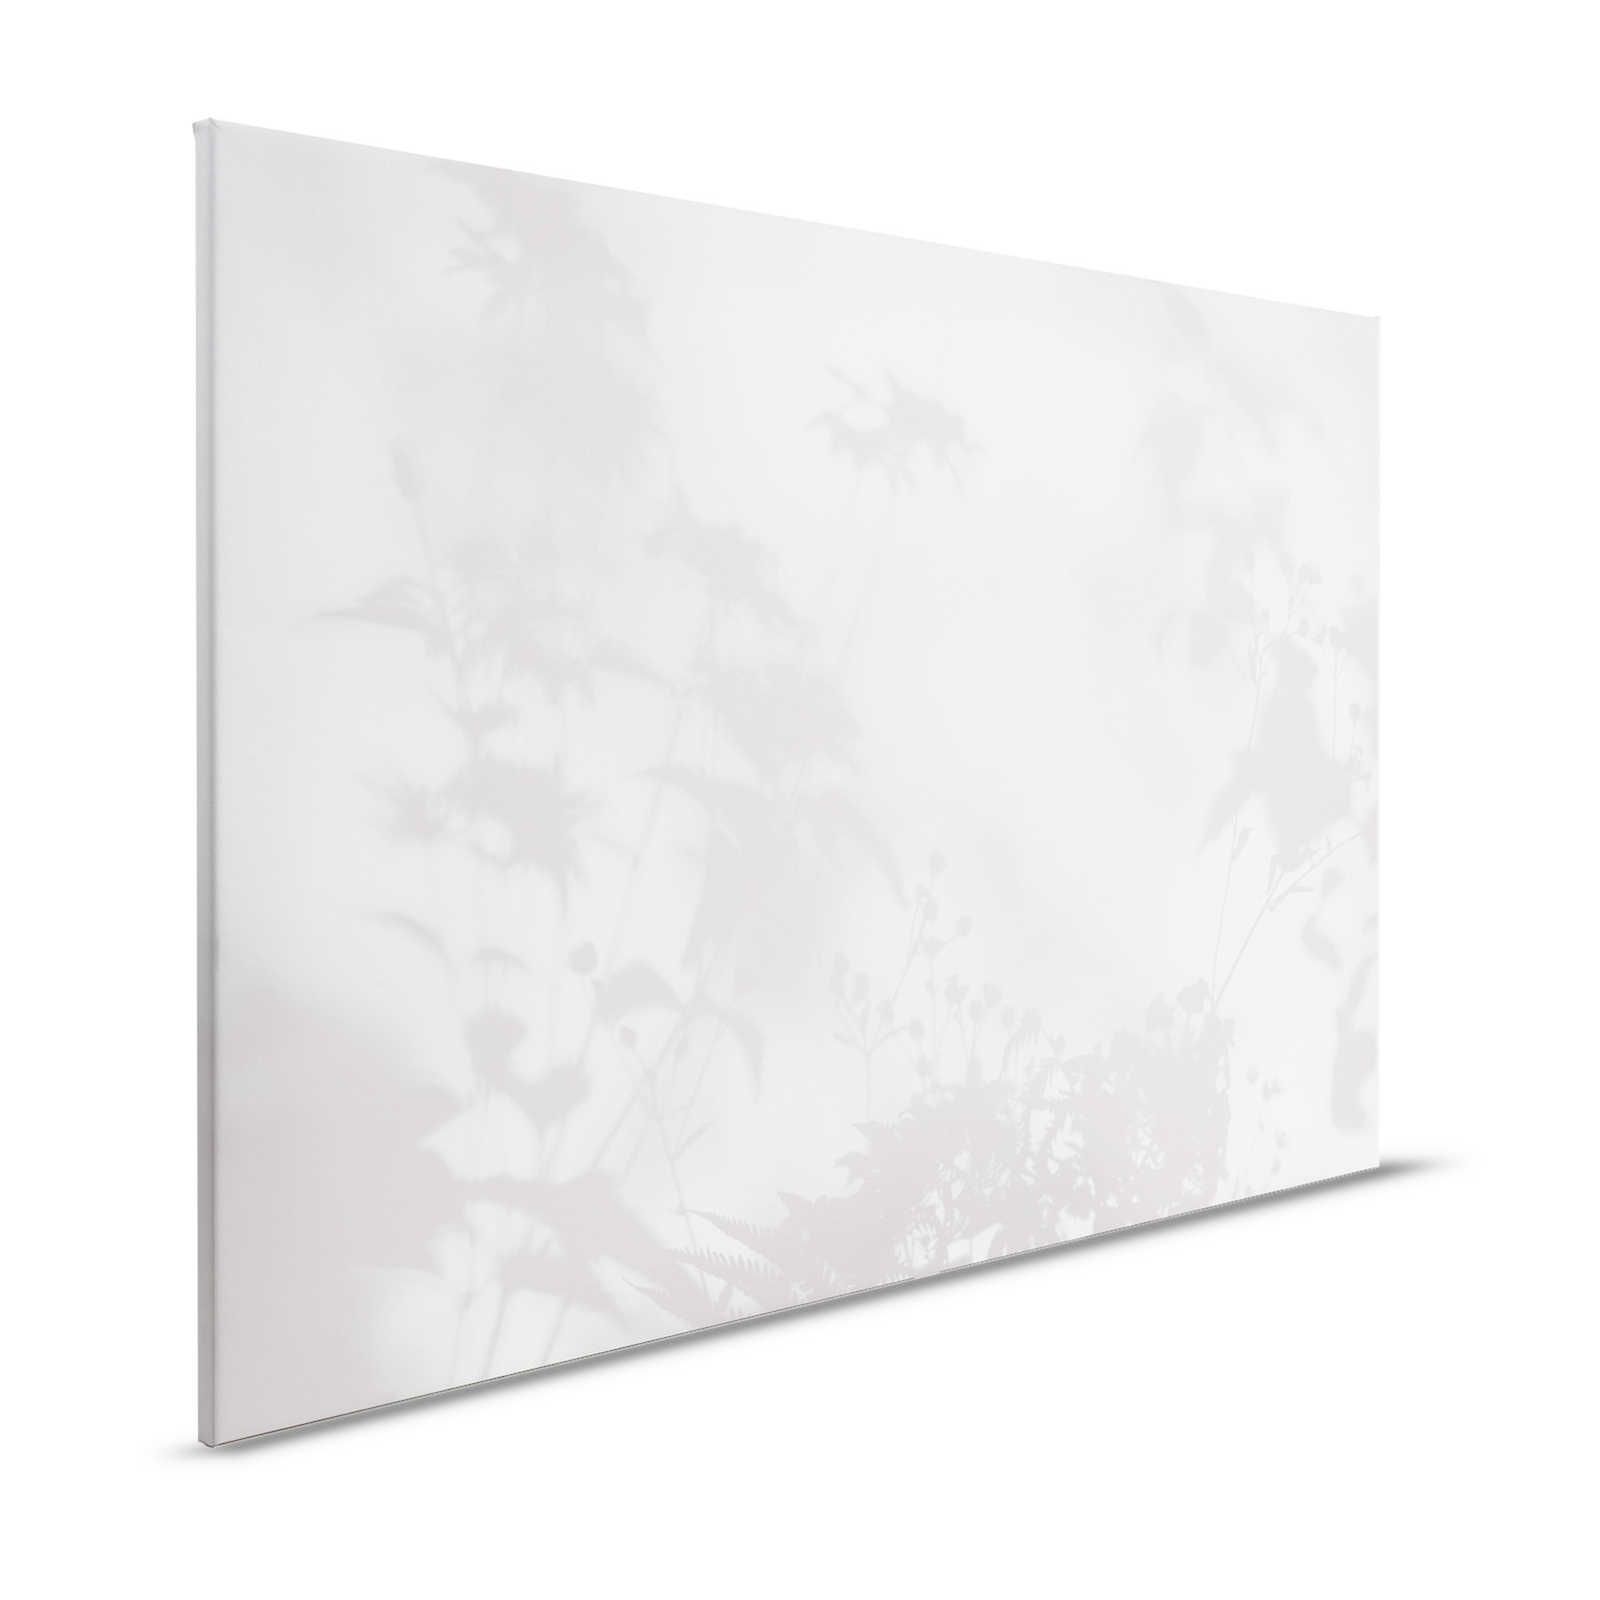 Camera d'ombra 2 - Quadro su tela naturale grigio e bianco, disegno sbiadito - 1,20 m x 0,80 m
